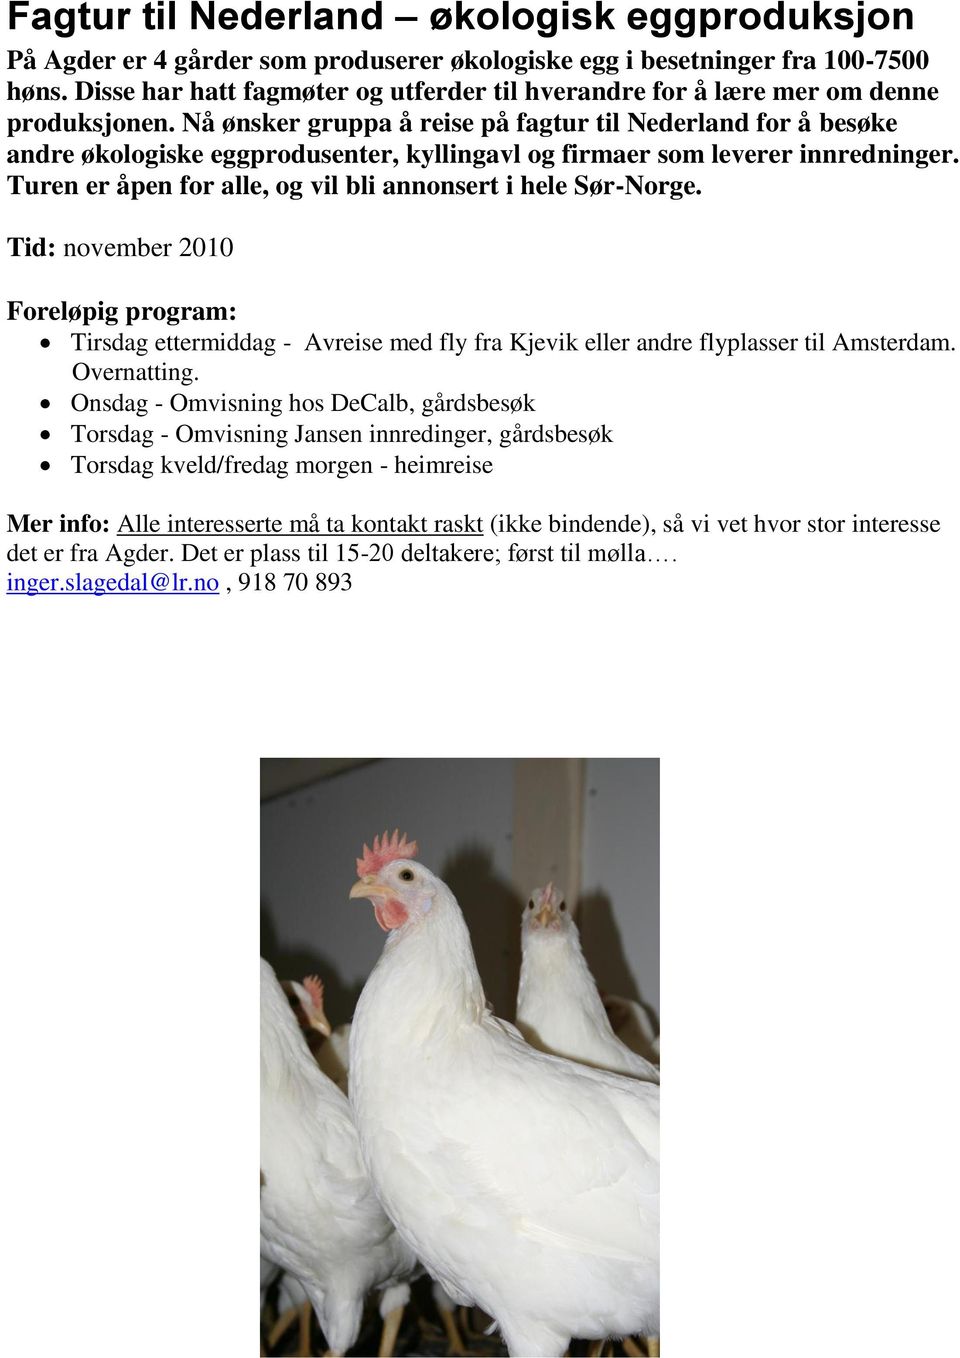 Nå ønsker gruppa å reise på fagtur til Nederland for å besøke andre økologiske eggprodusenter, kyllingavl og firmaer som leverer innredninger.